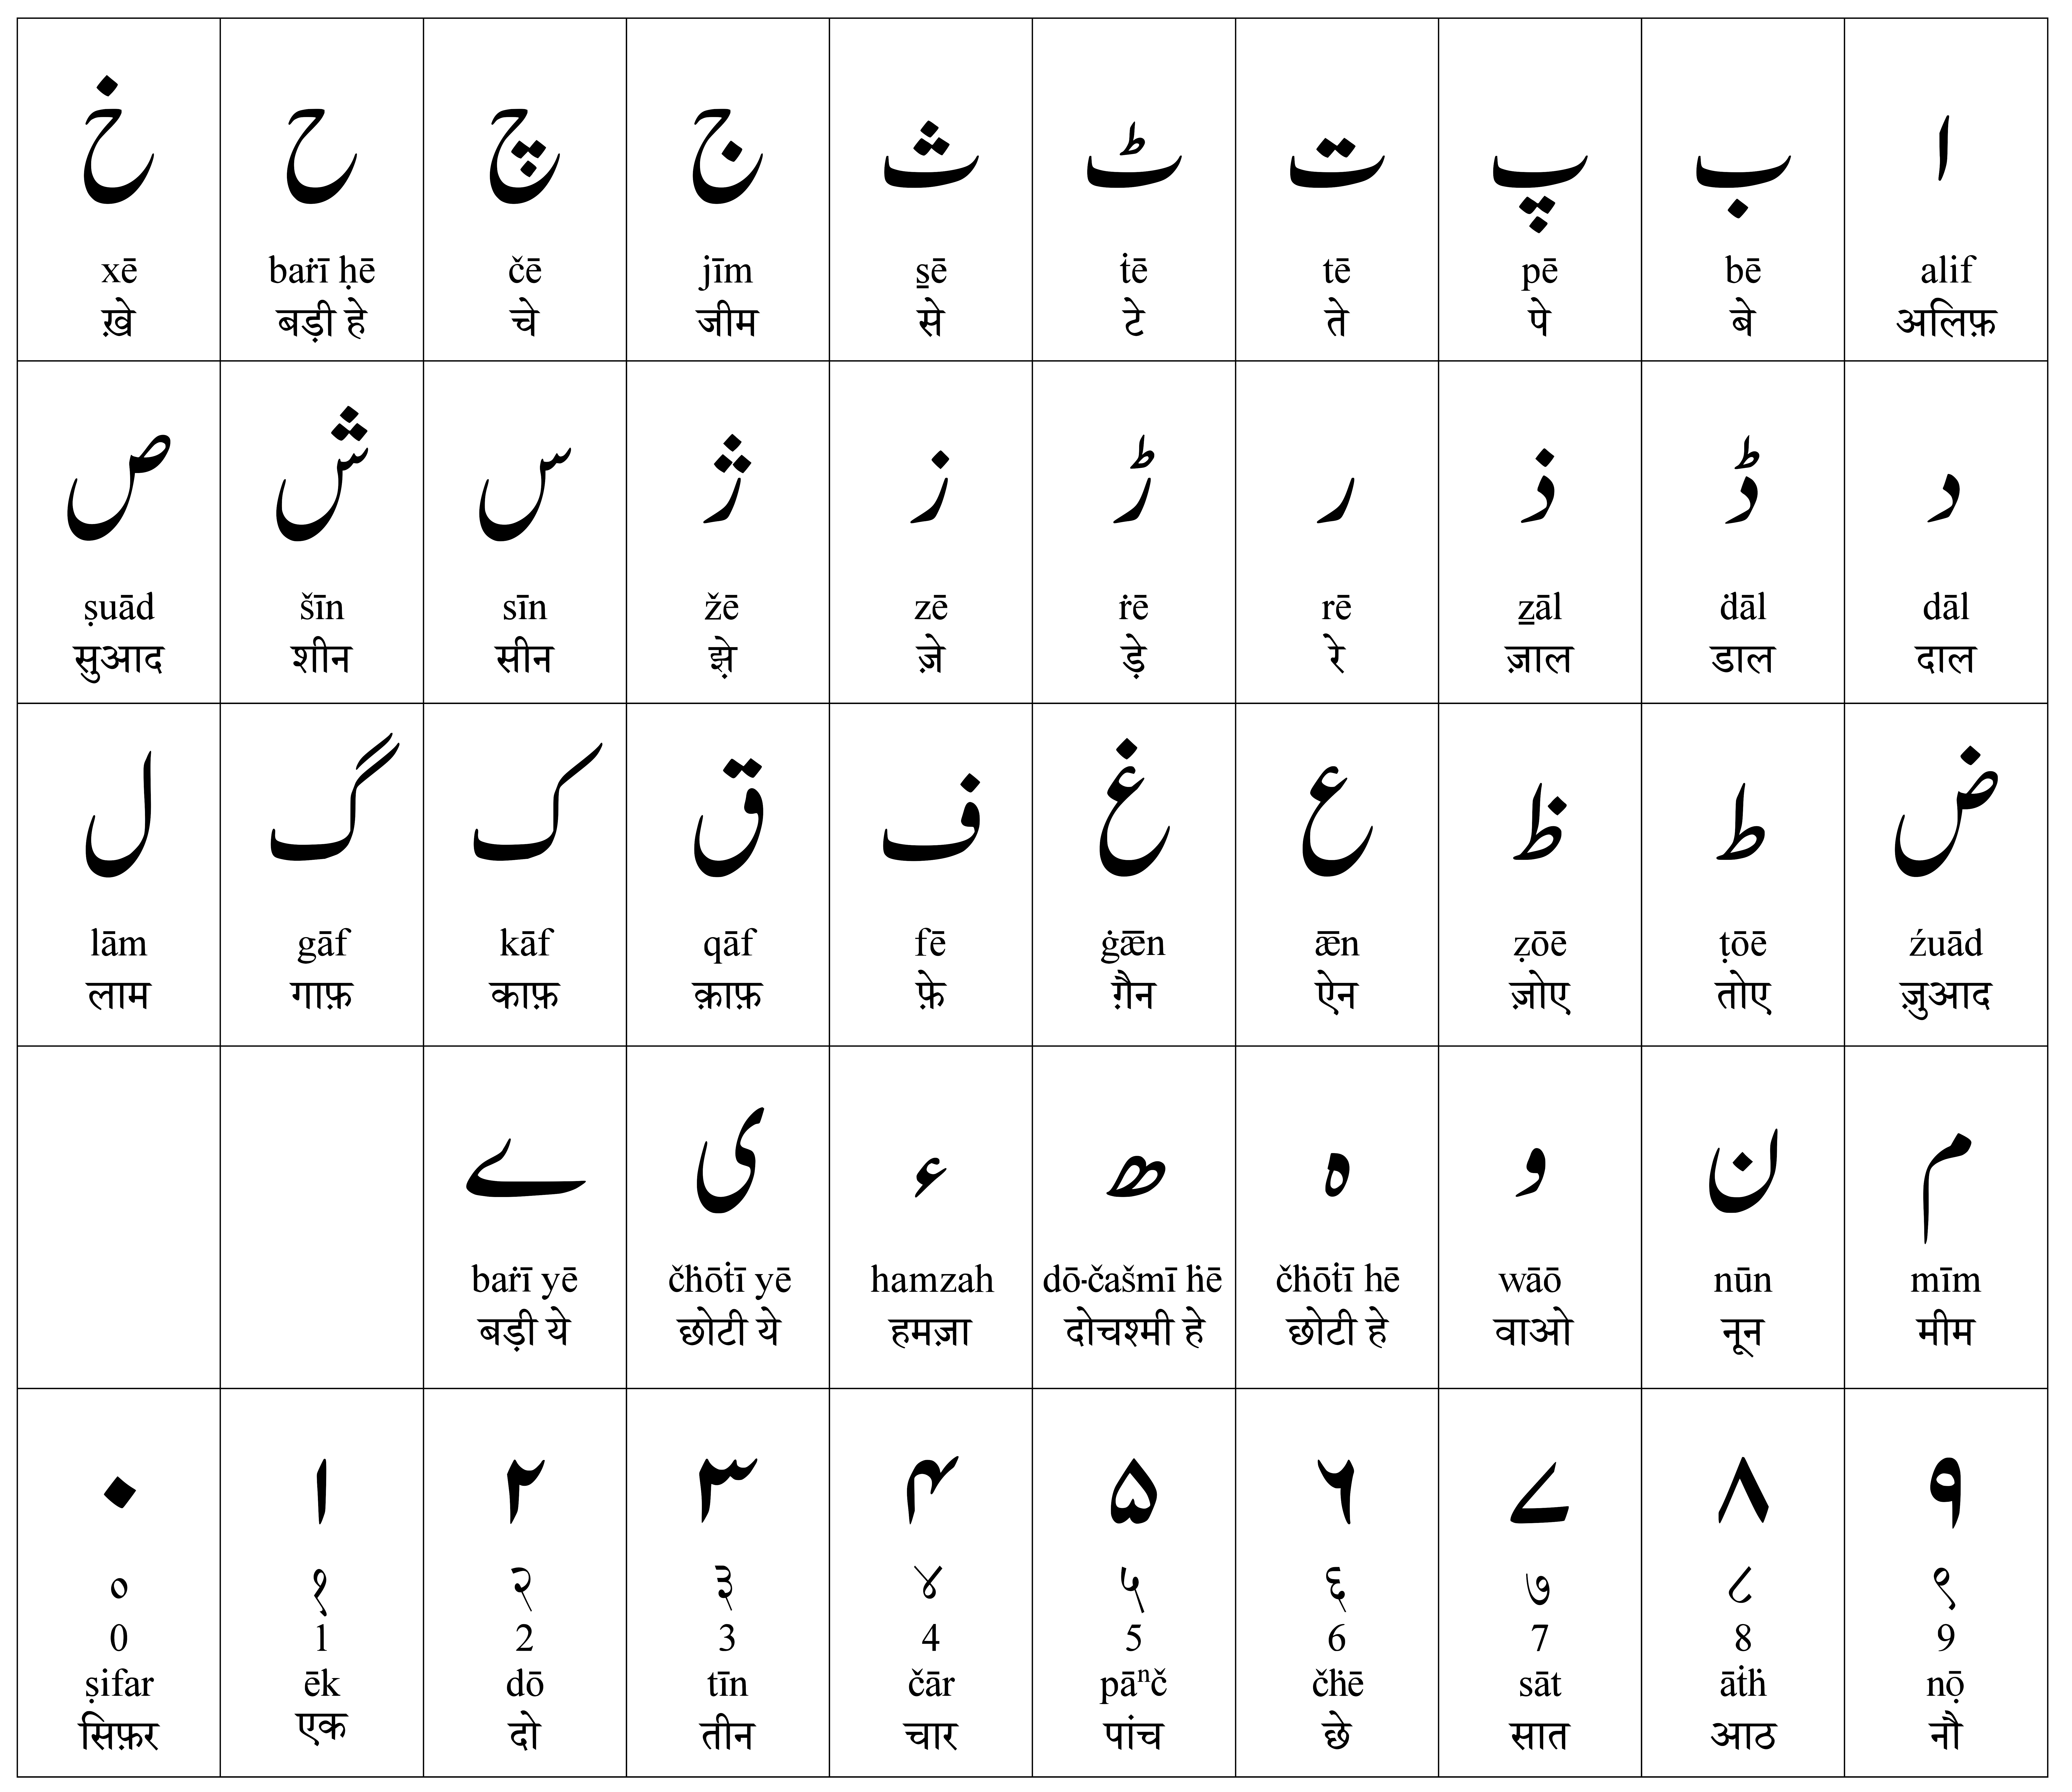 阿拉伯语字母表 写法图片